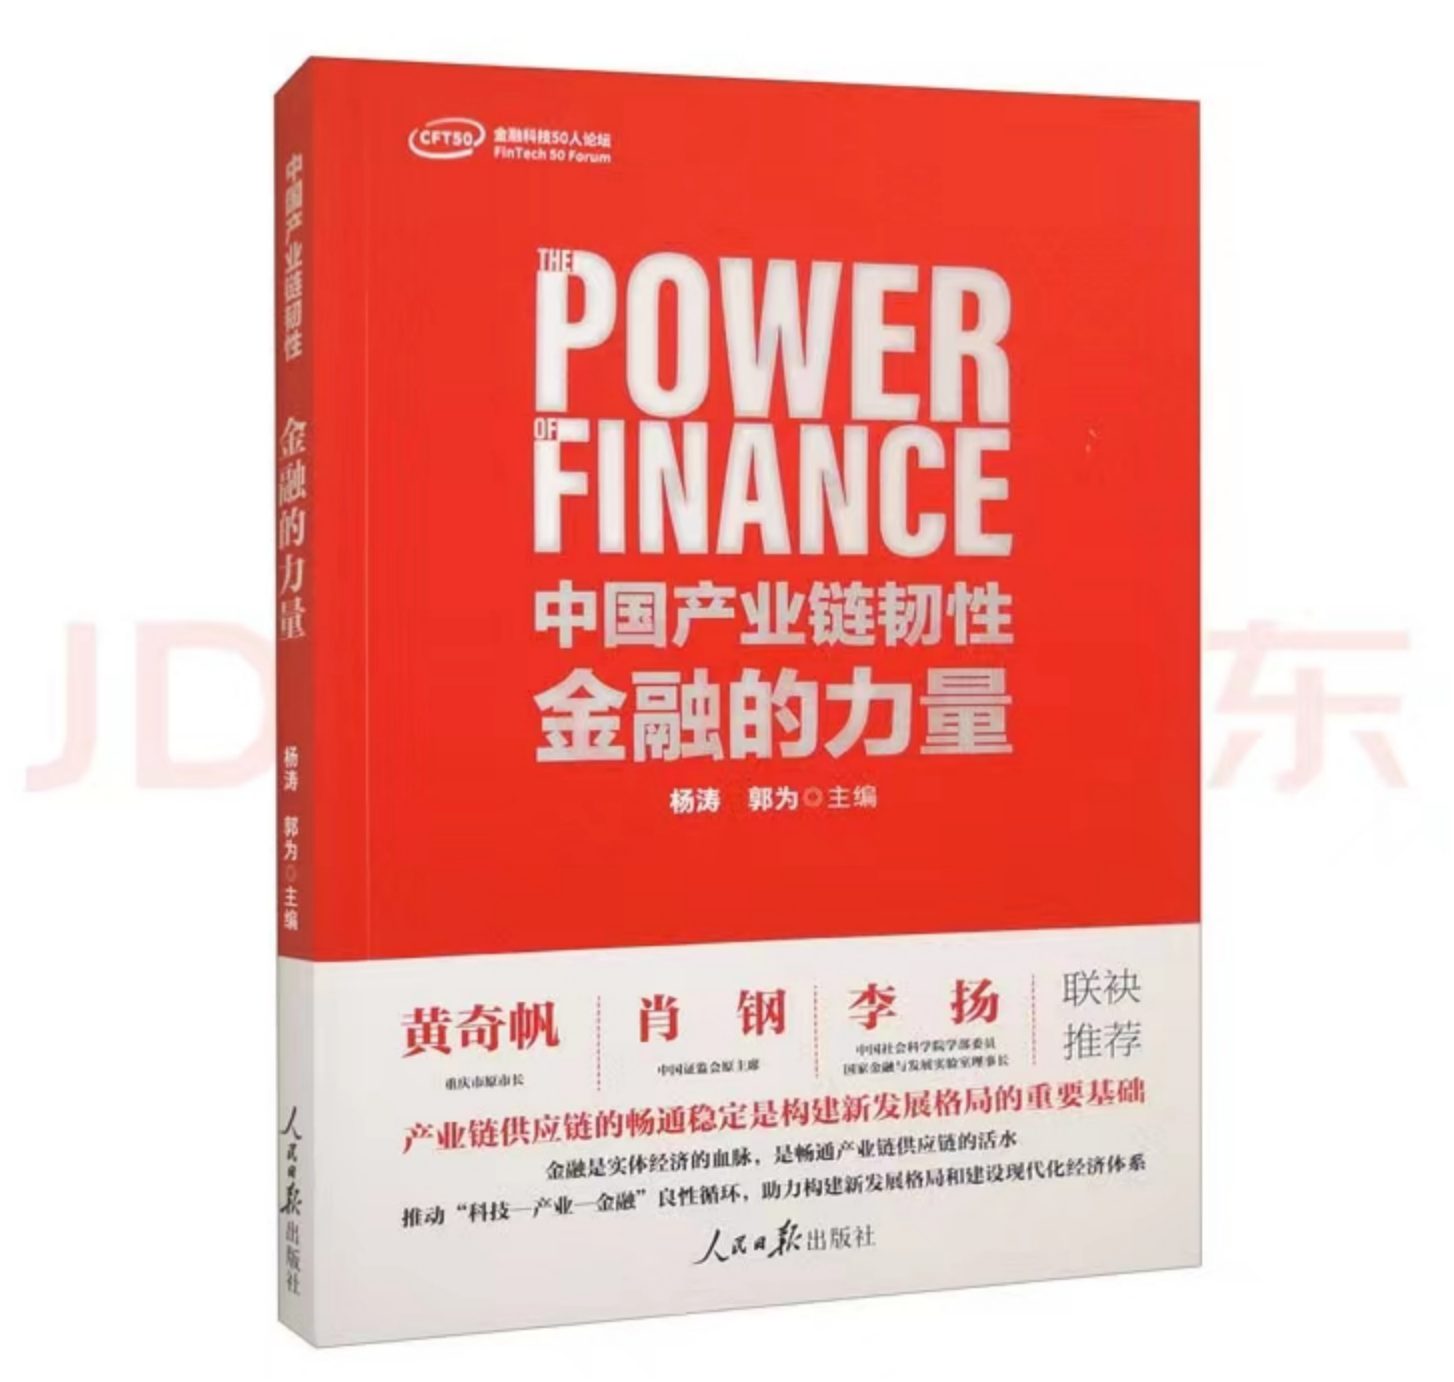 人民日报出版社《中国产业链韧性：金融的力量》新书发布京东供应链金融科技被